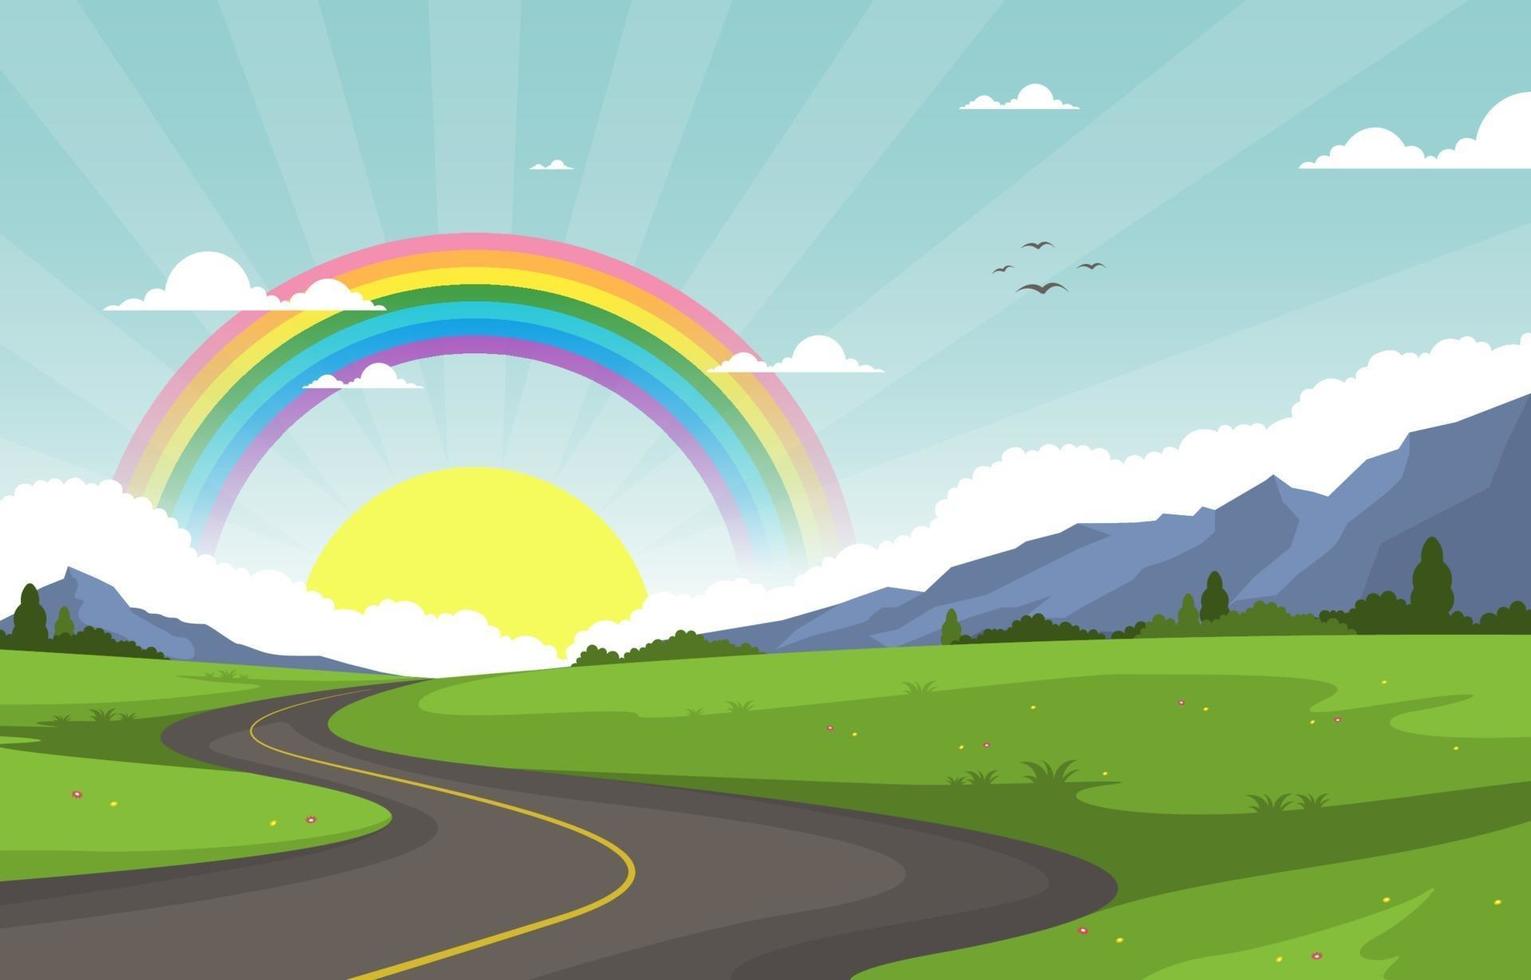 kronkelende weg regenboog natuur landschap landschap illustratie vector